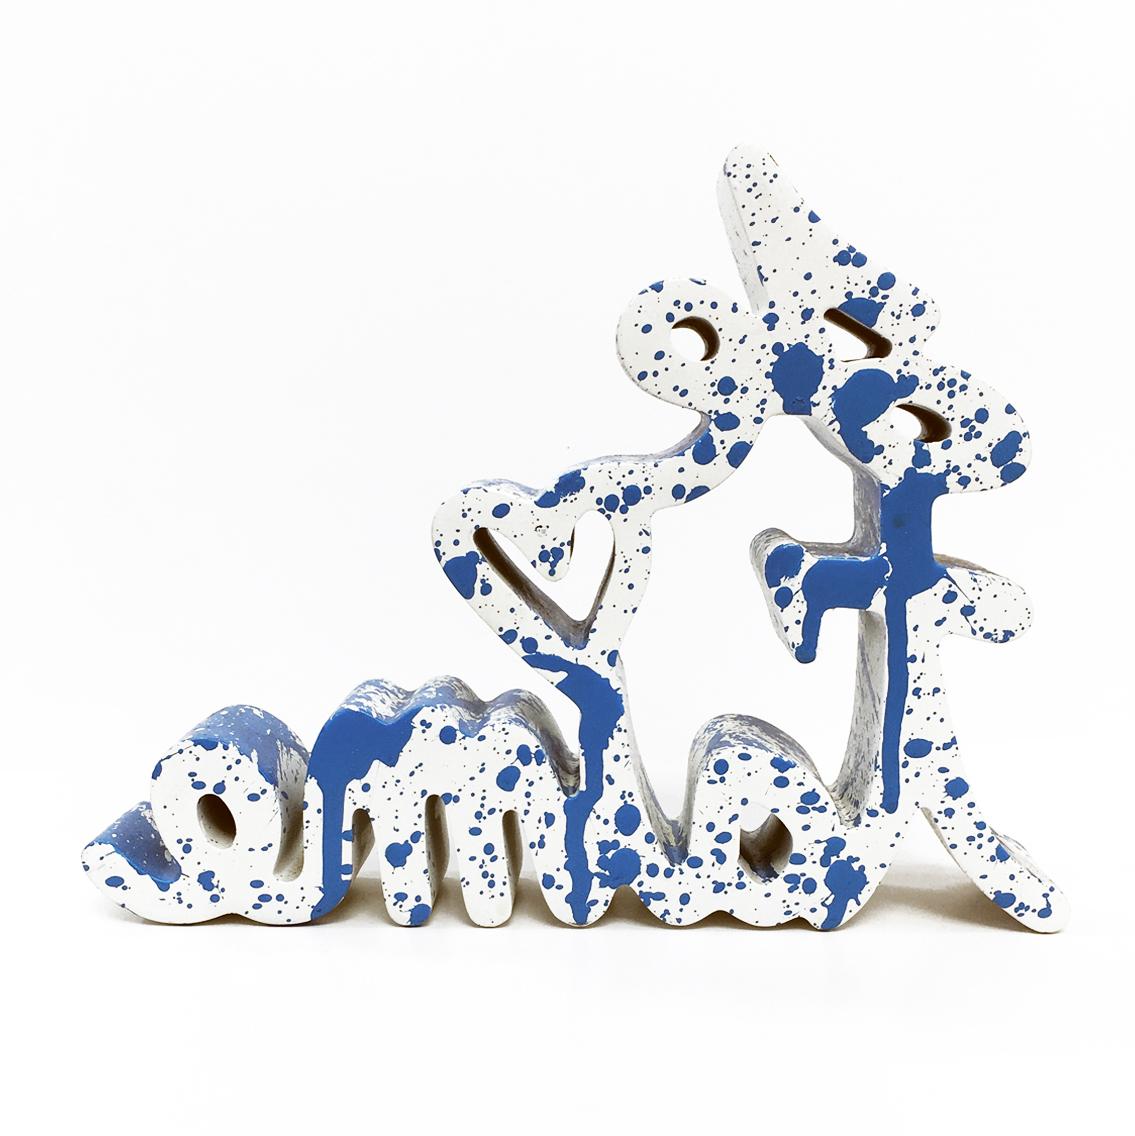 JE T'AIME - BLUE SPLASH (SCULPTURE) - Sculpture by Mr Brainwash